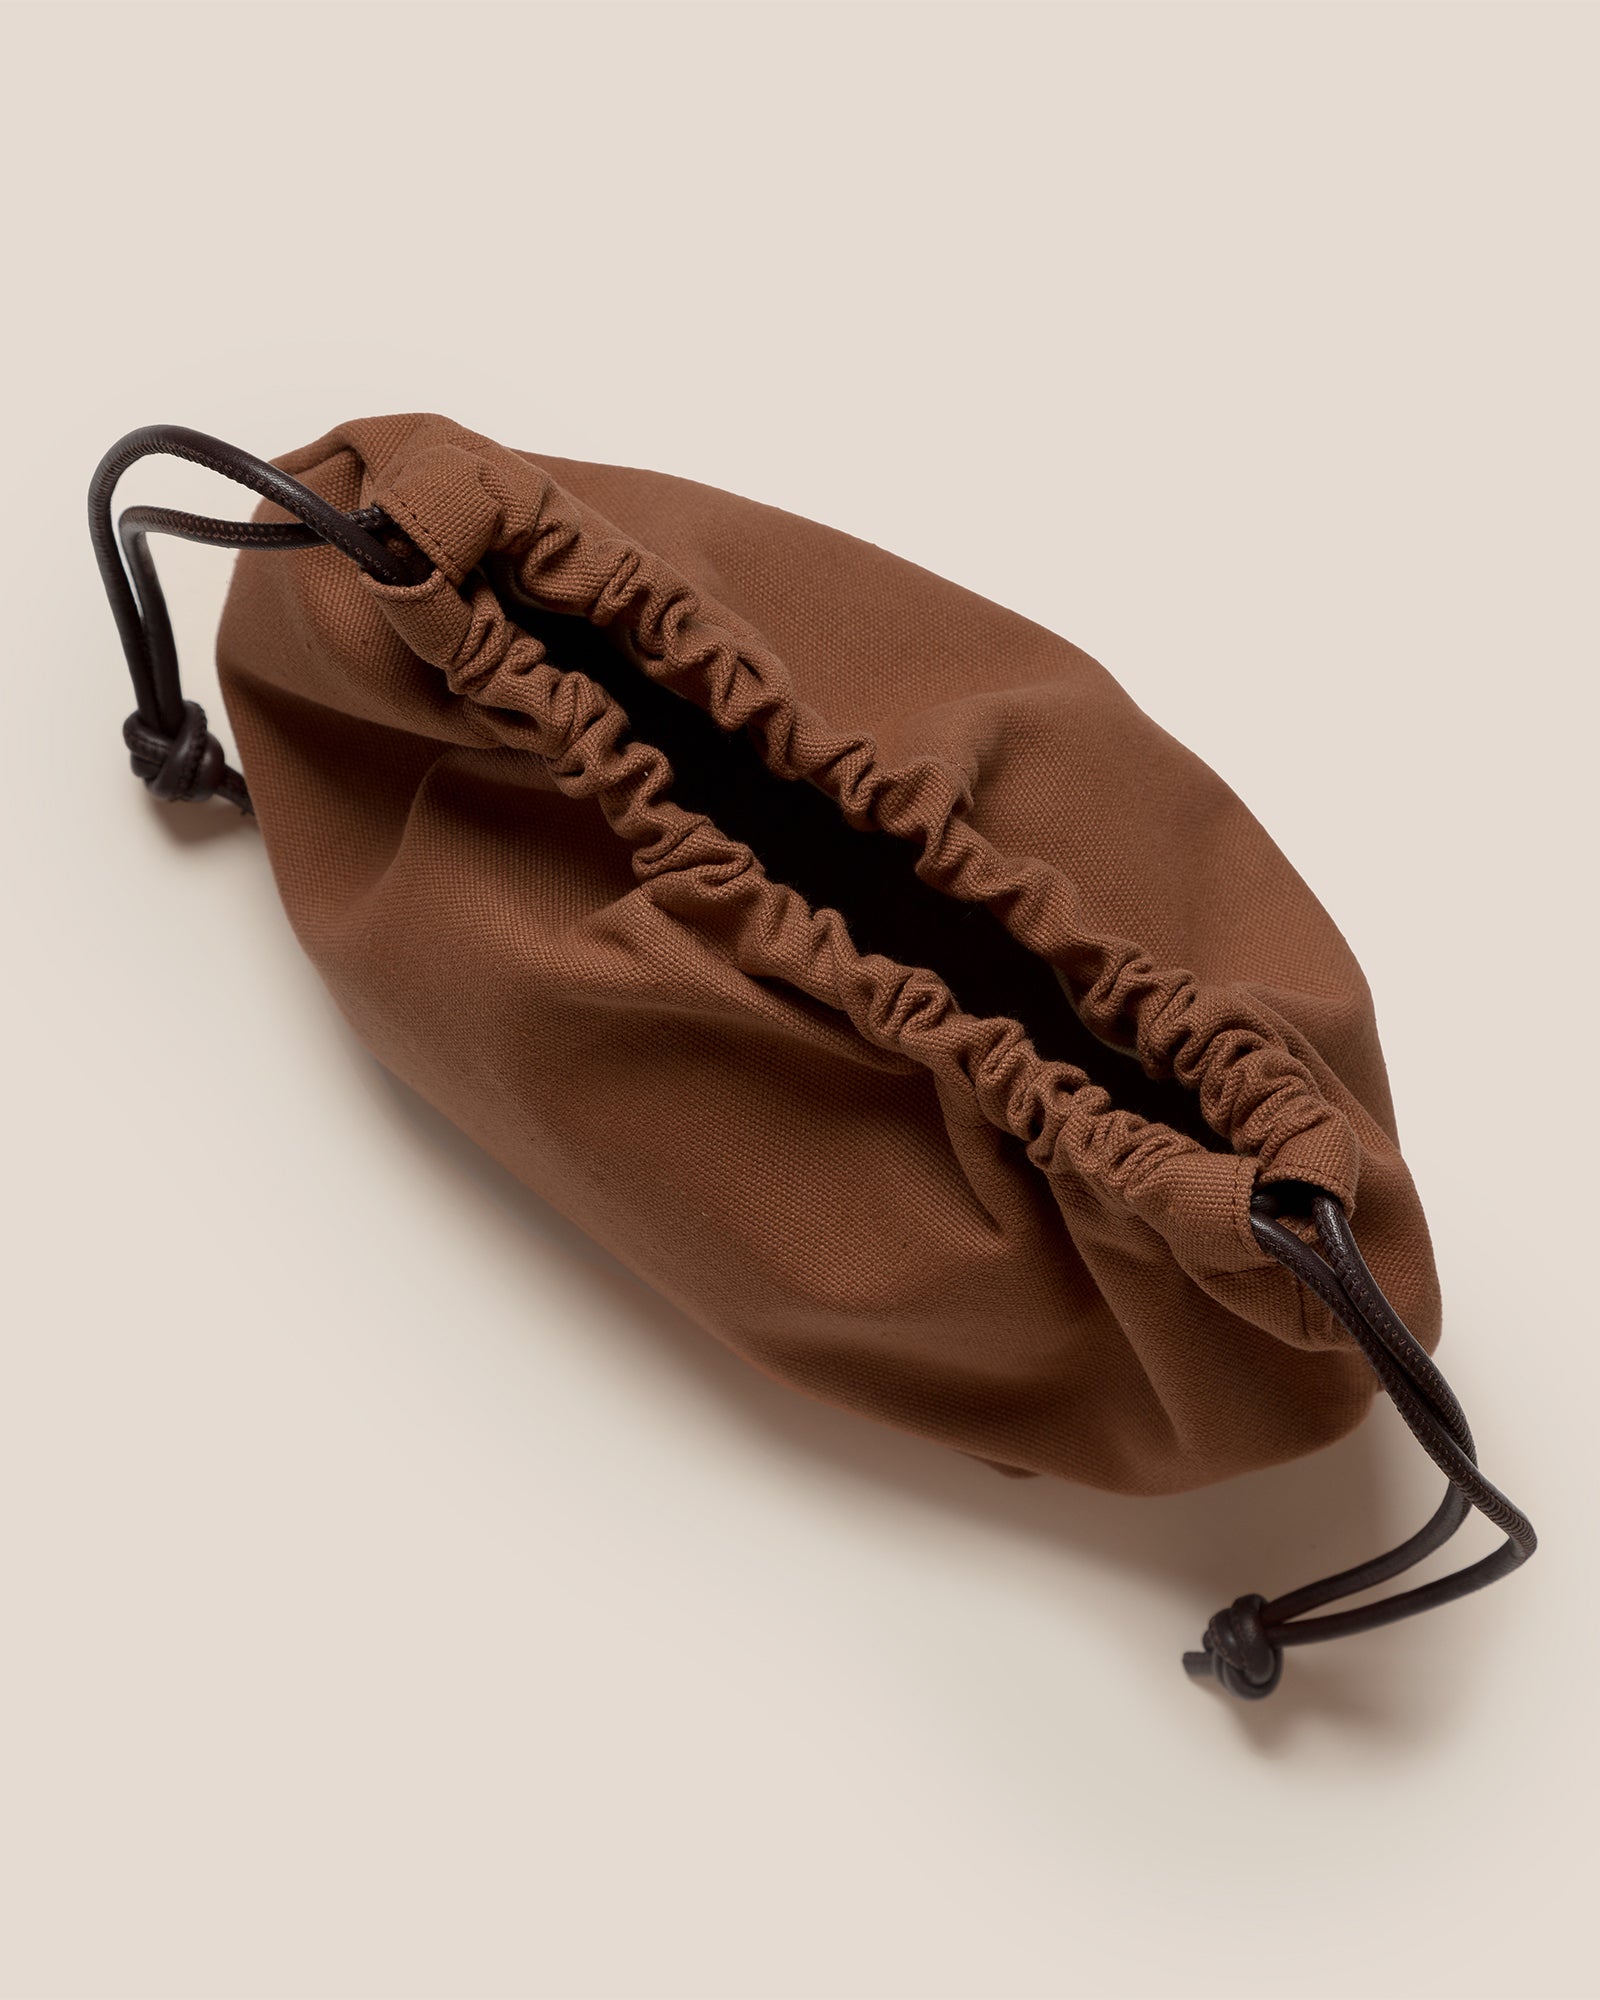 $560 Hereu Women's Beige Cabassa Canvas Round Handle Leather